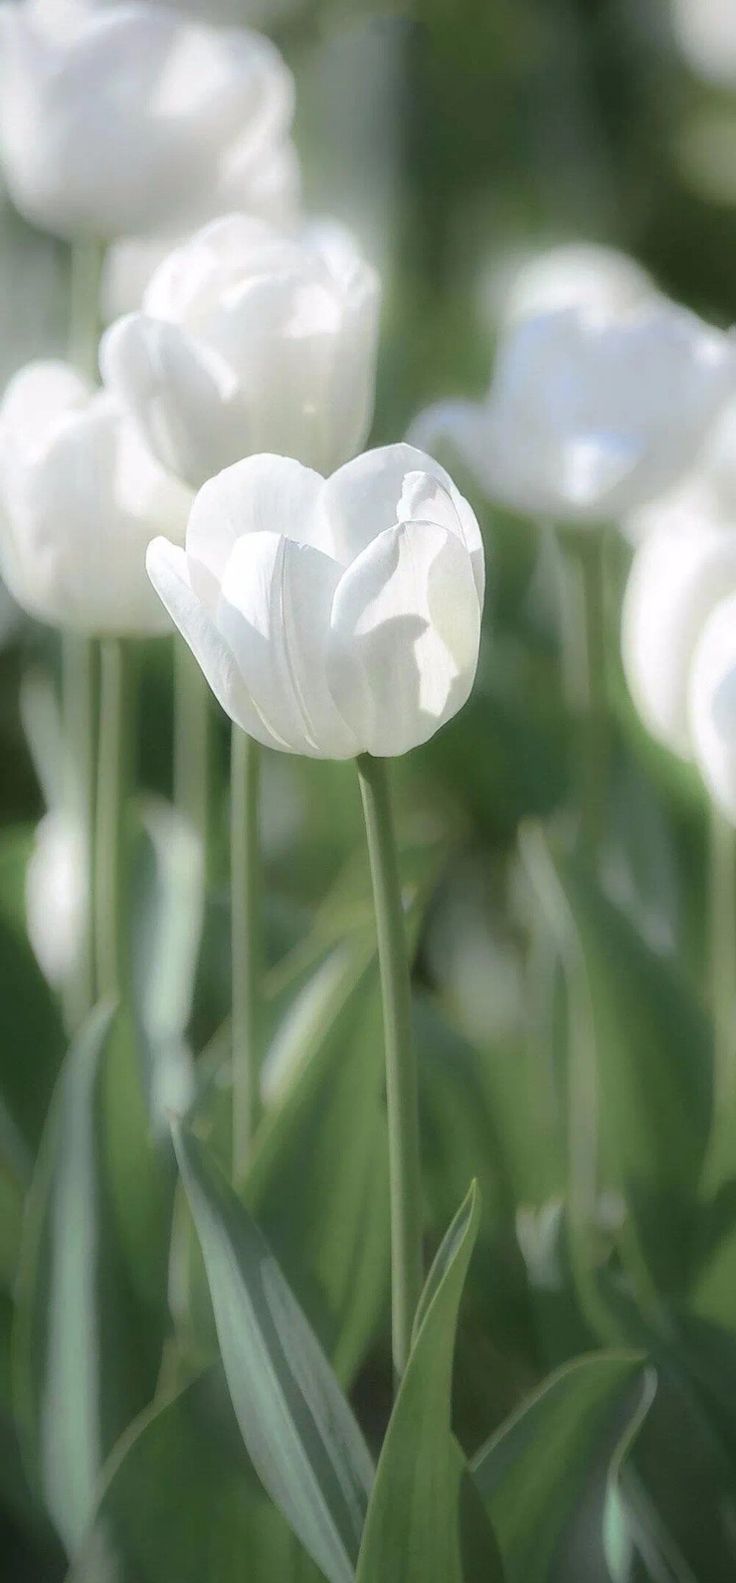 Hình nền hoa tulip trắng Love Me Tender để "xin vía" tình yêu đẹp (Ảnh: Internet)